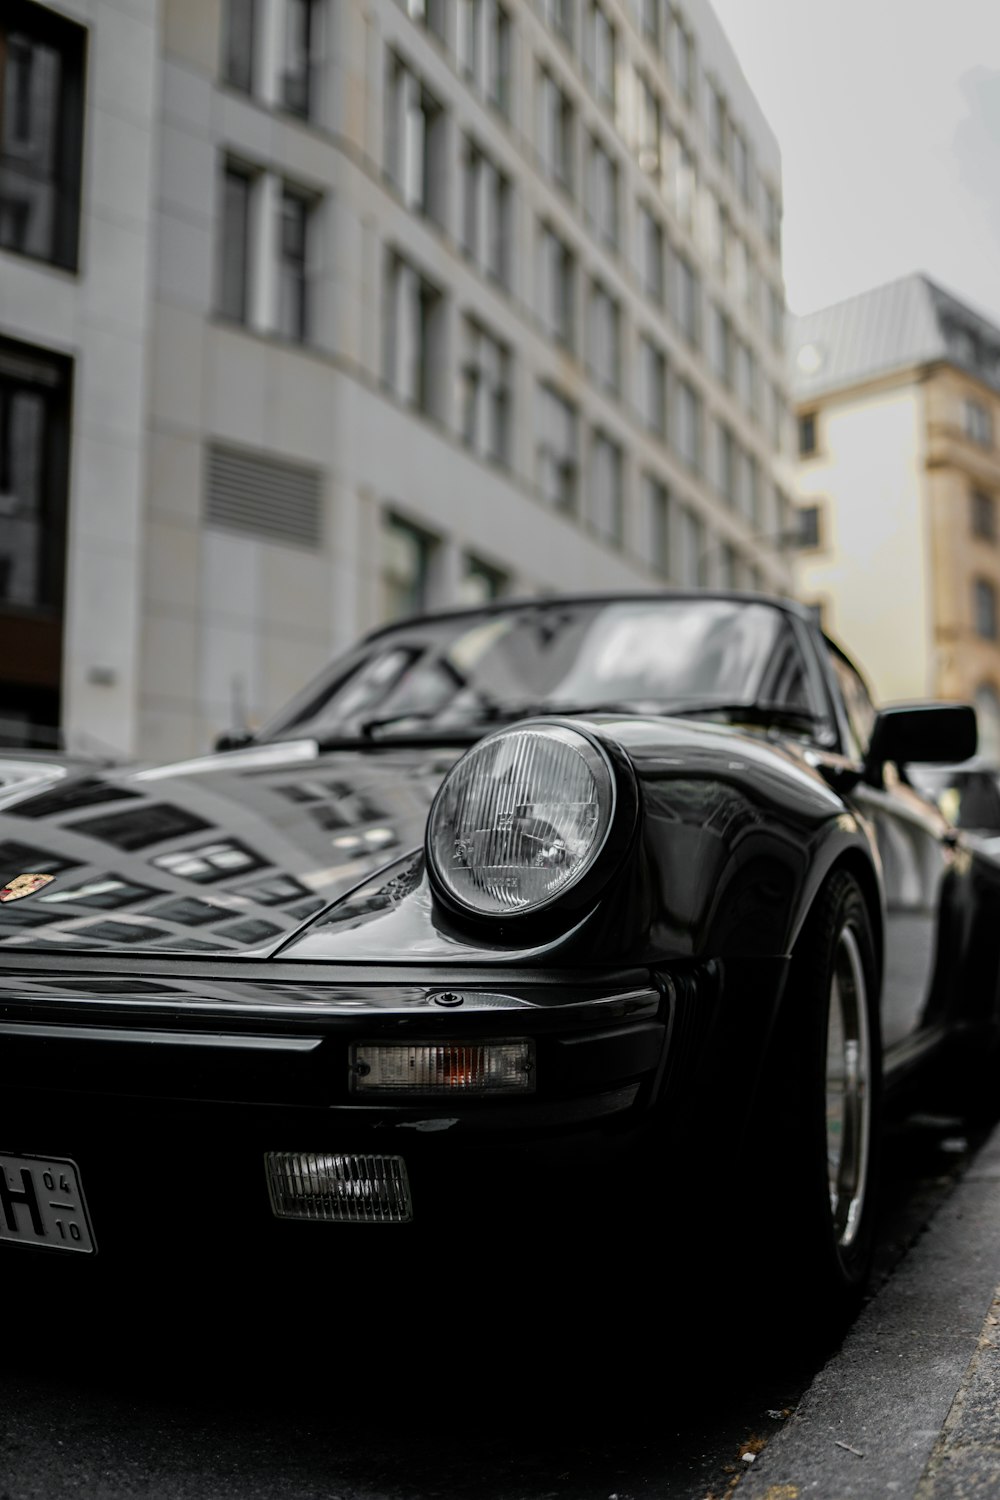 Porsche 911 noire garée près d’un immeuble pendant la journée